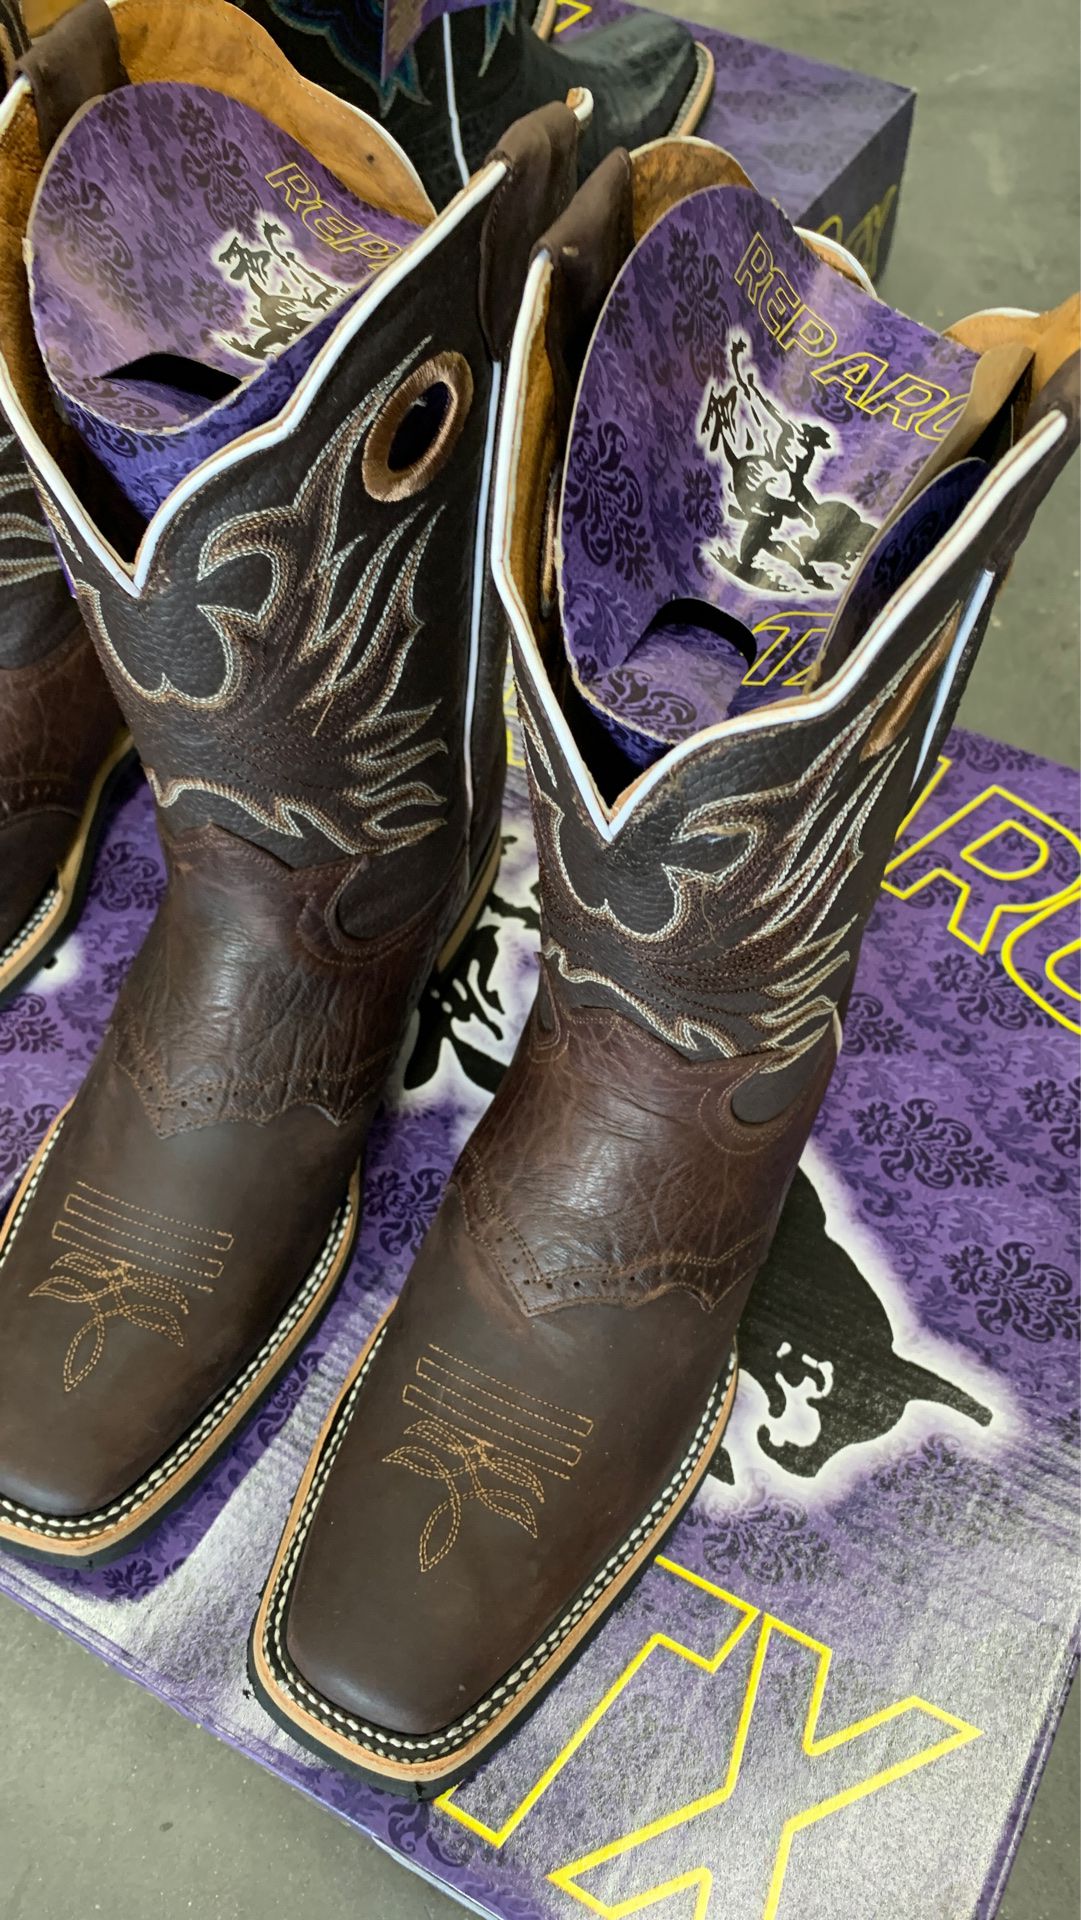 Bota vaquera / cowboy boots